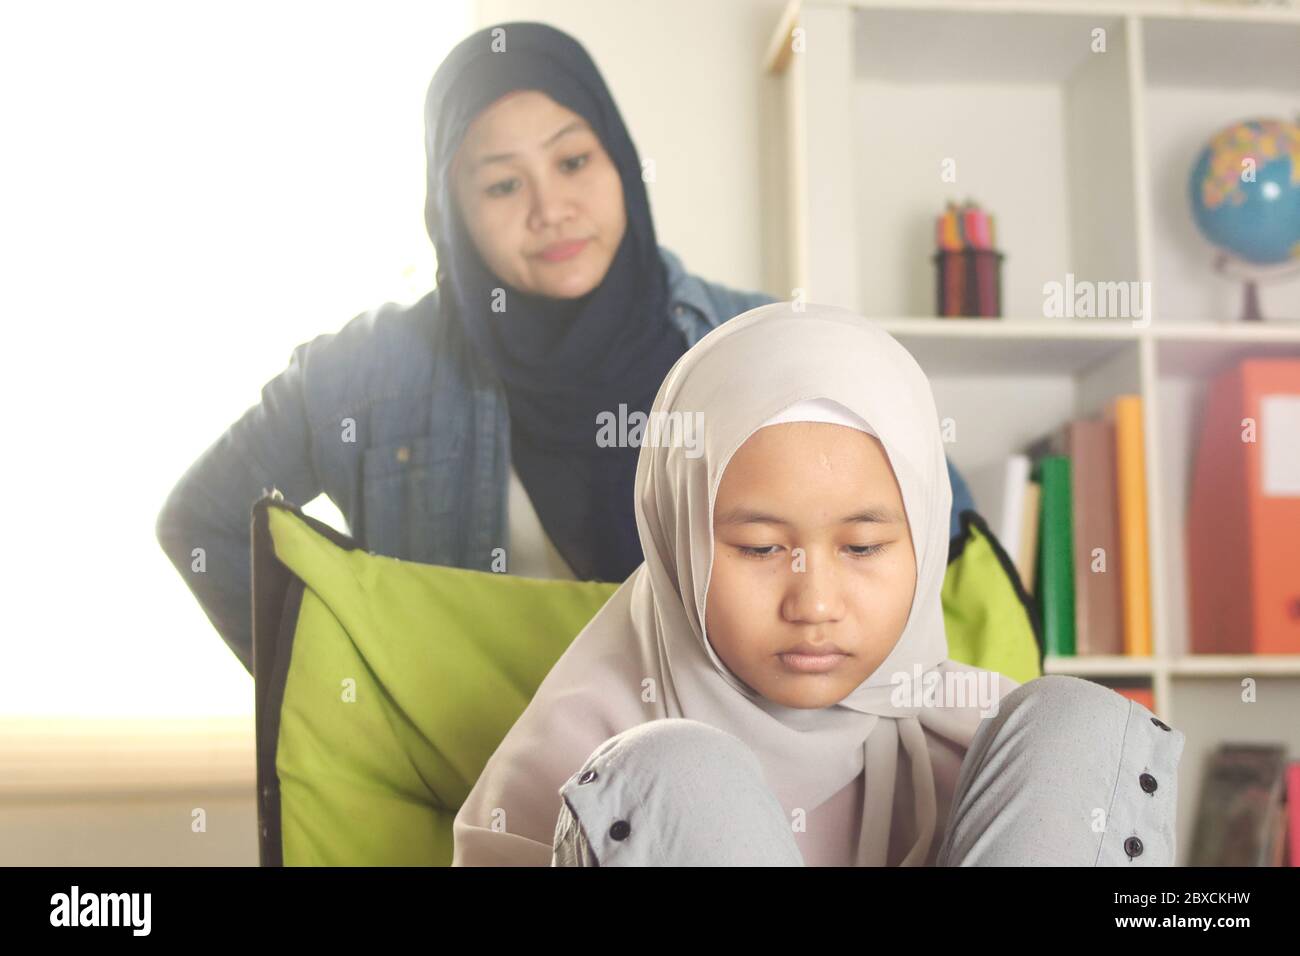 Madre musulmana pasando mal tiempo con su hija, mamá le da la pena a su adolescente, la gente de Asia islámica Foto de stock